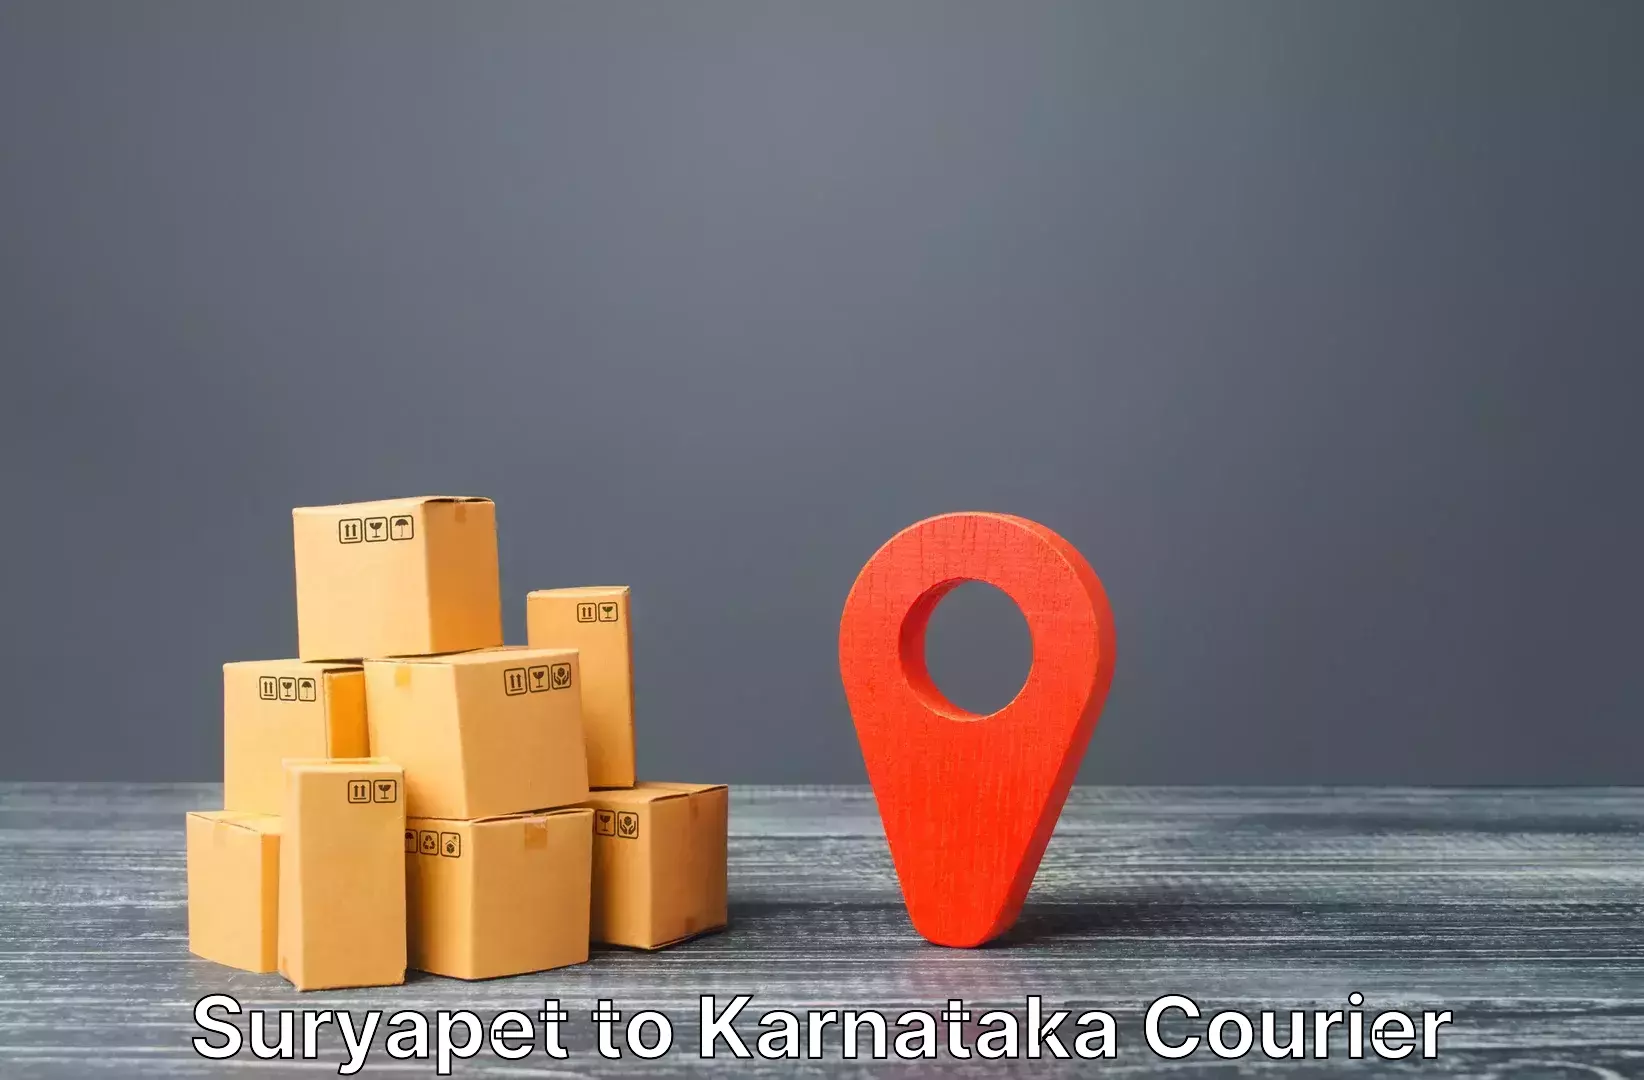 Electronic items luggage shipping Suryapet to Gulbarga